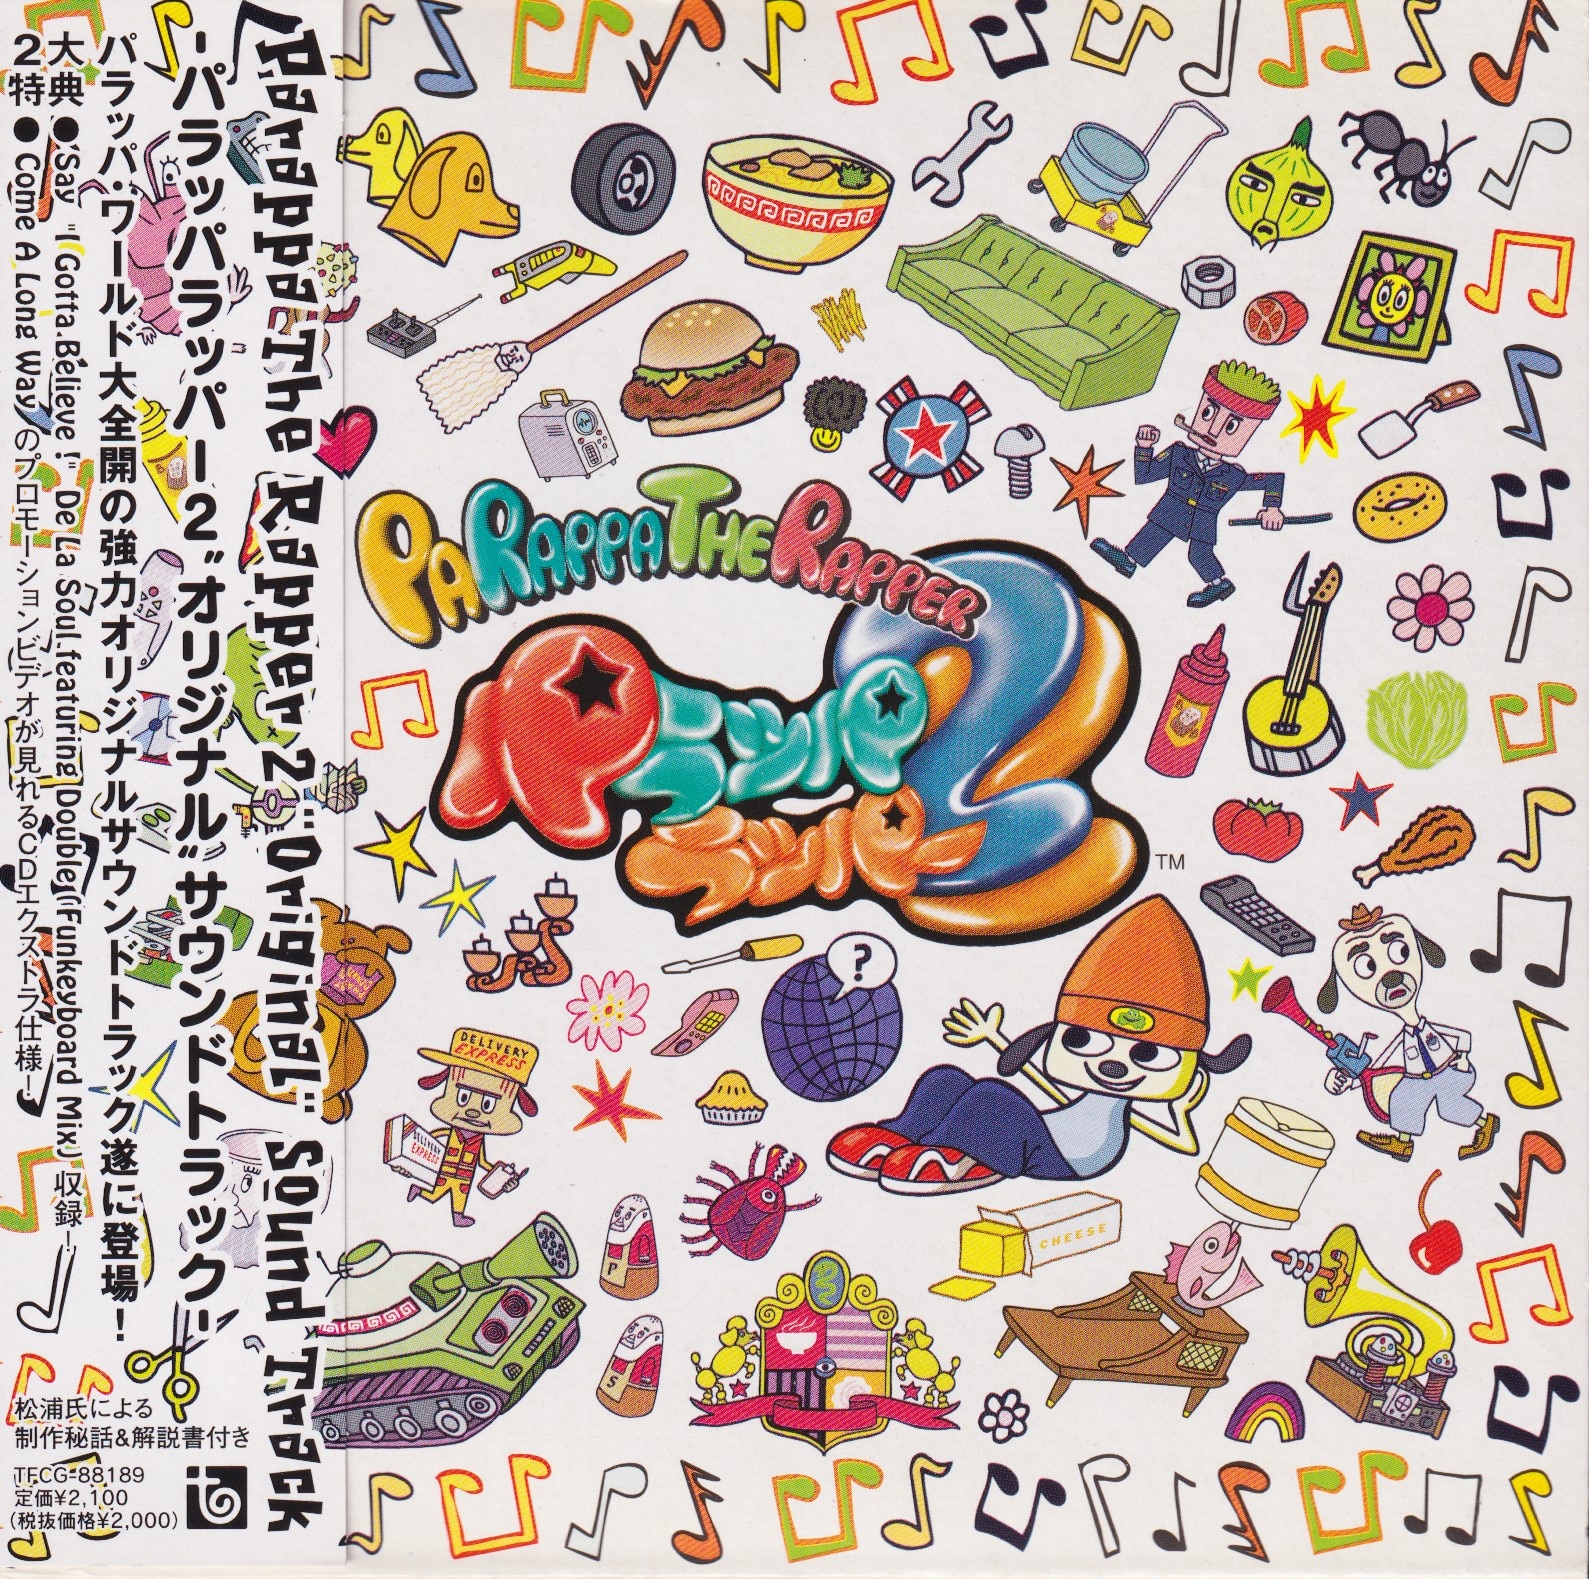 パラッパラッパー2 オフィシャル サウンドトラック CD サントラ